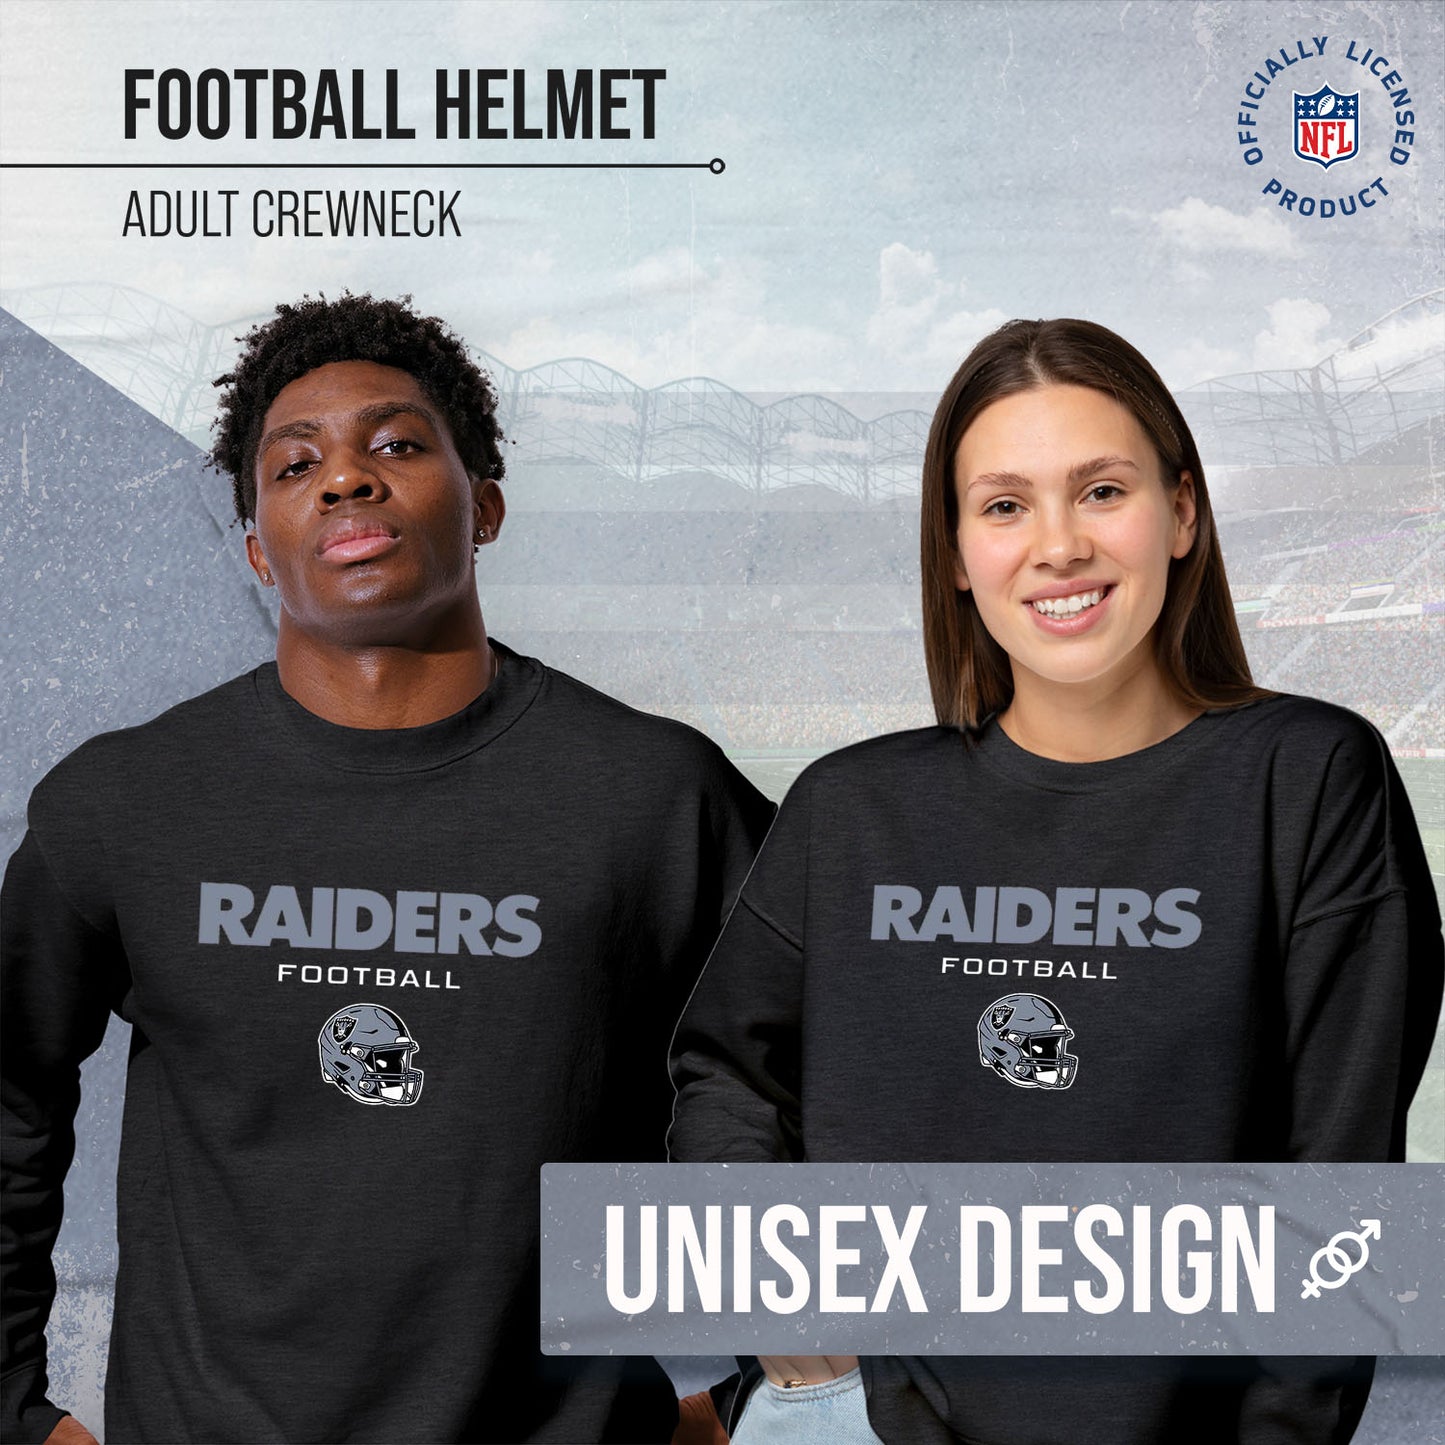 Las Vegas Raiders Adult NFL Football Helmet Heather Crewneck Sweatshirt - Charcoal